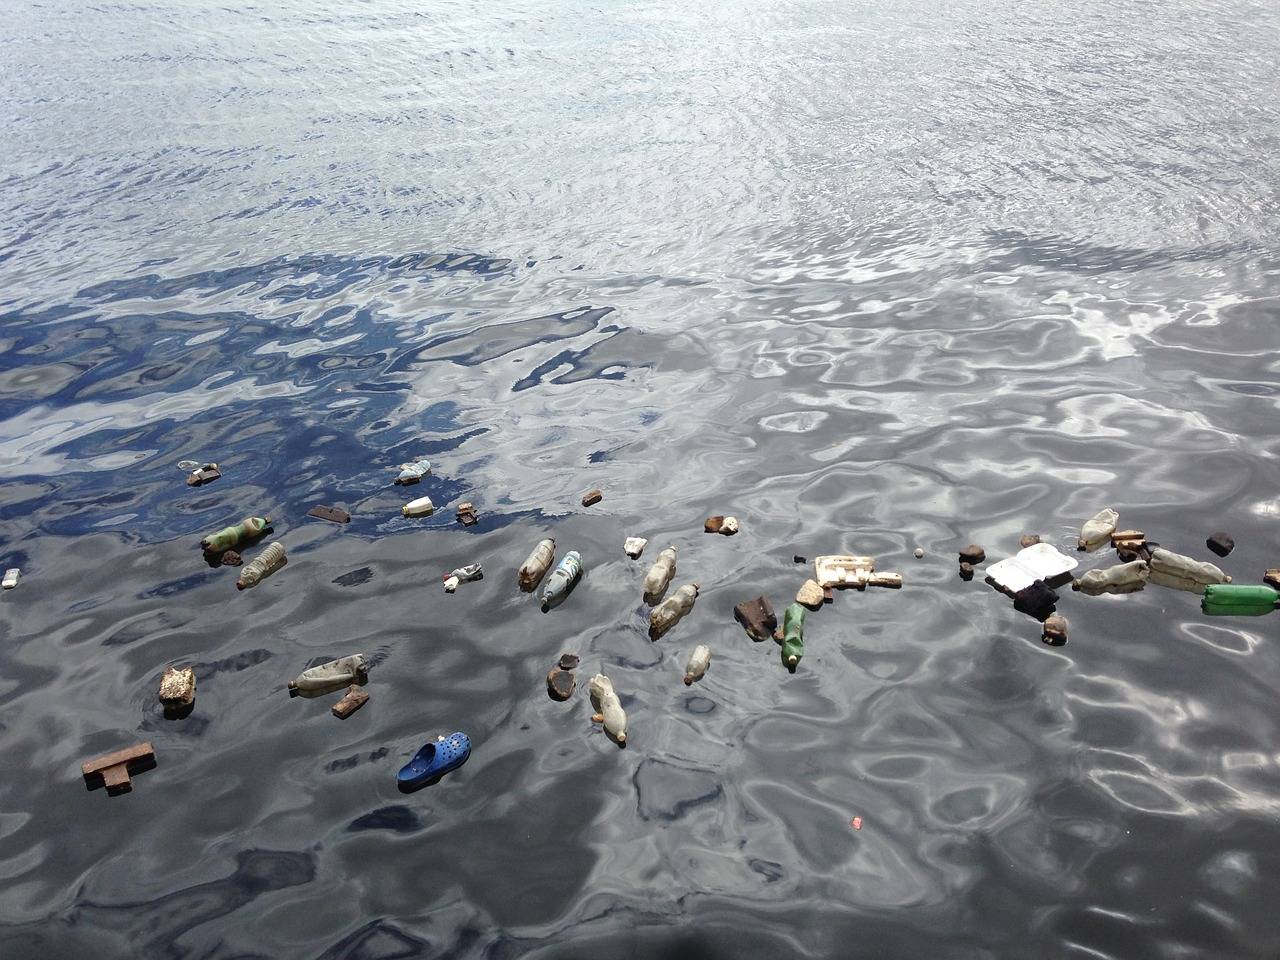 结果表明,全球深海中约有1400万吨该类污染物,预计是海洋表面塑料污染